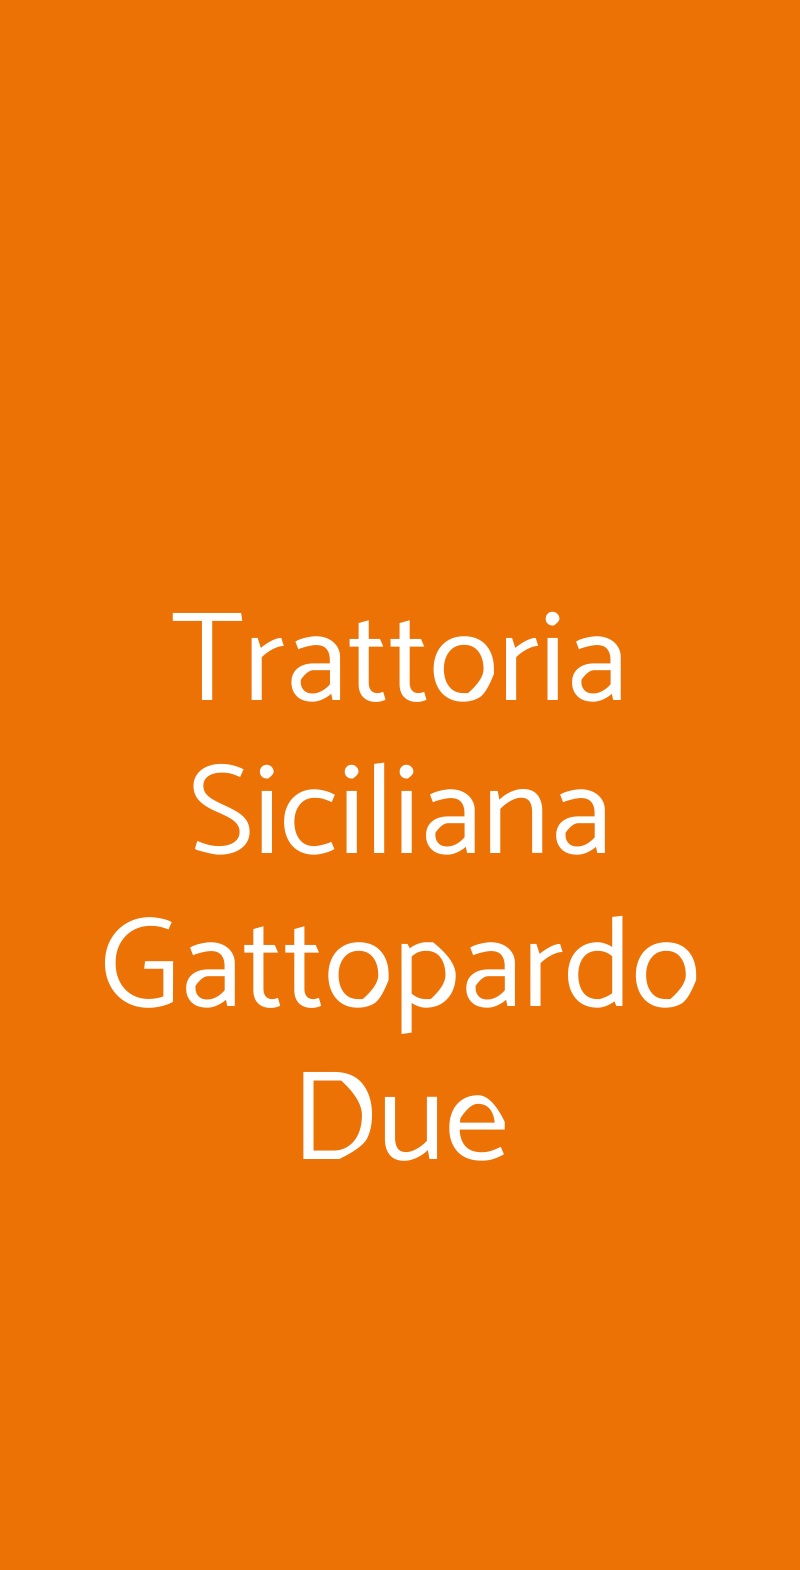 Trattoria Siciliana Gattopardo Due Milano menù 1 pagina